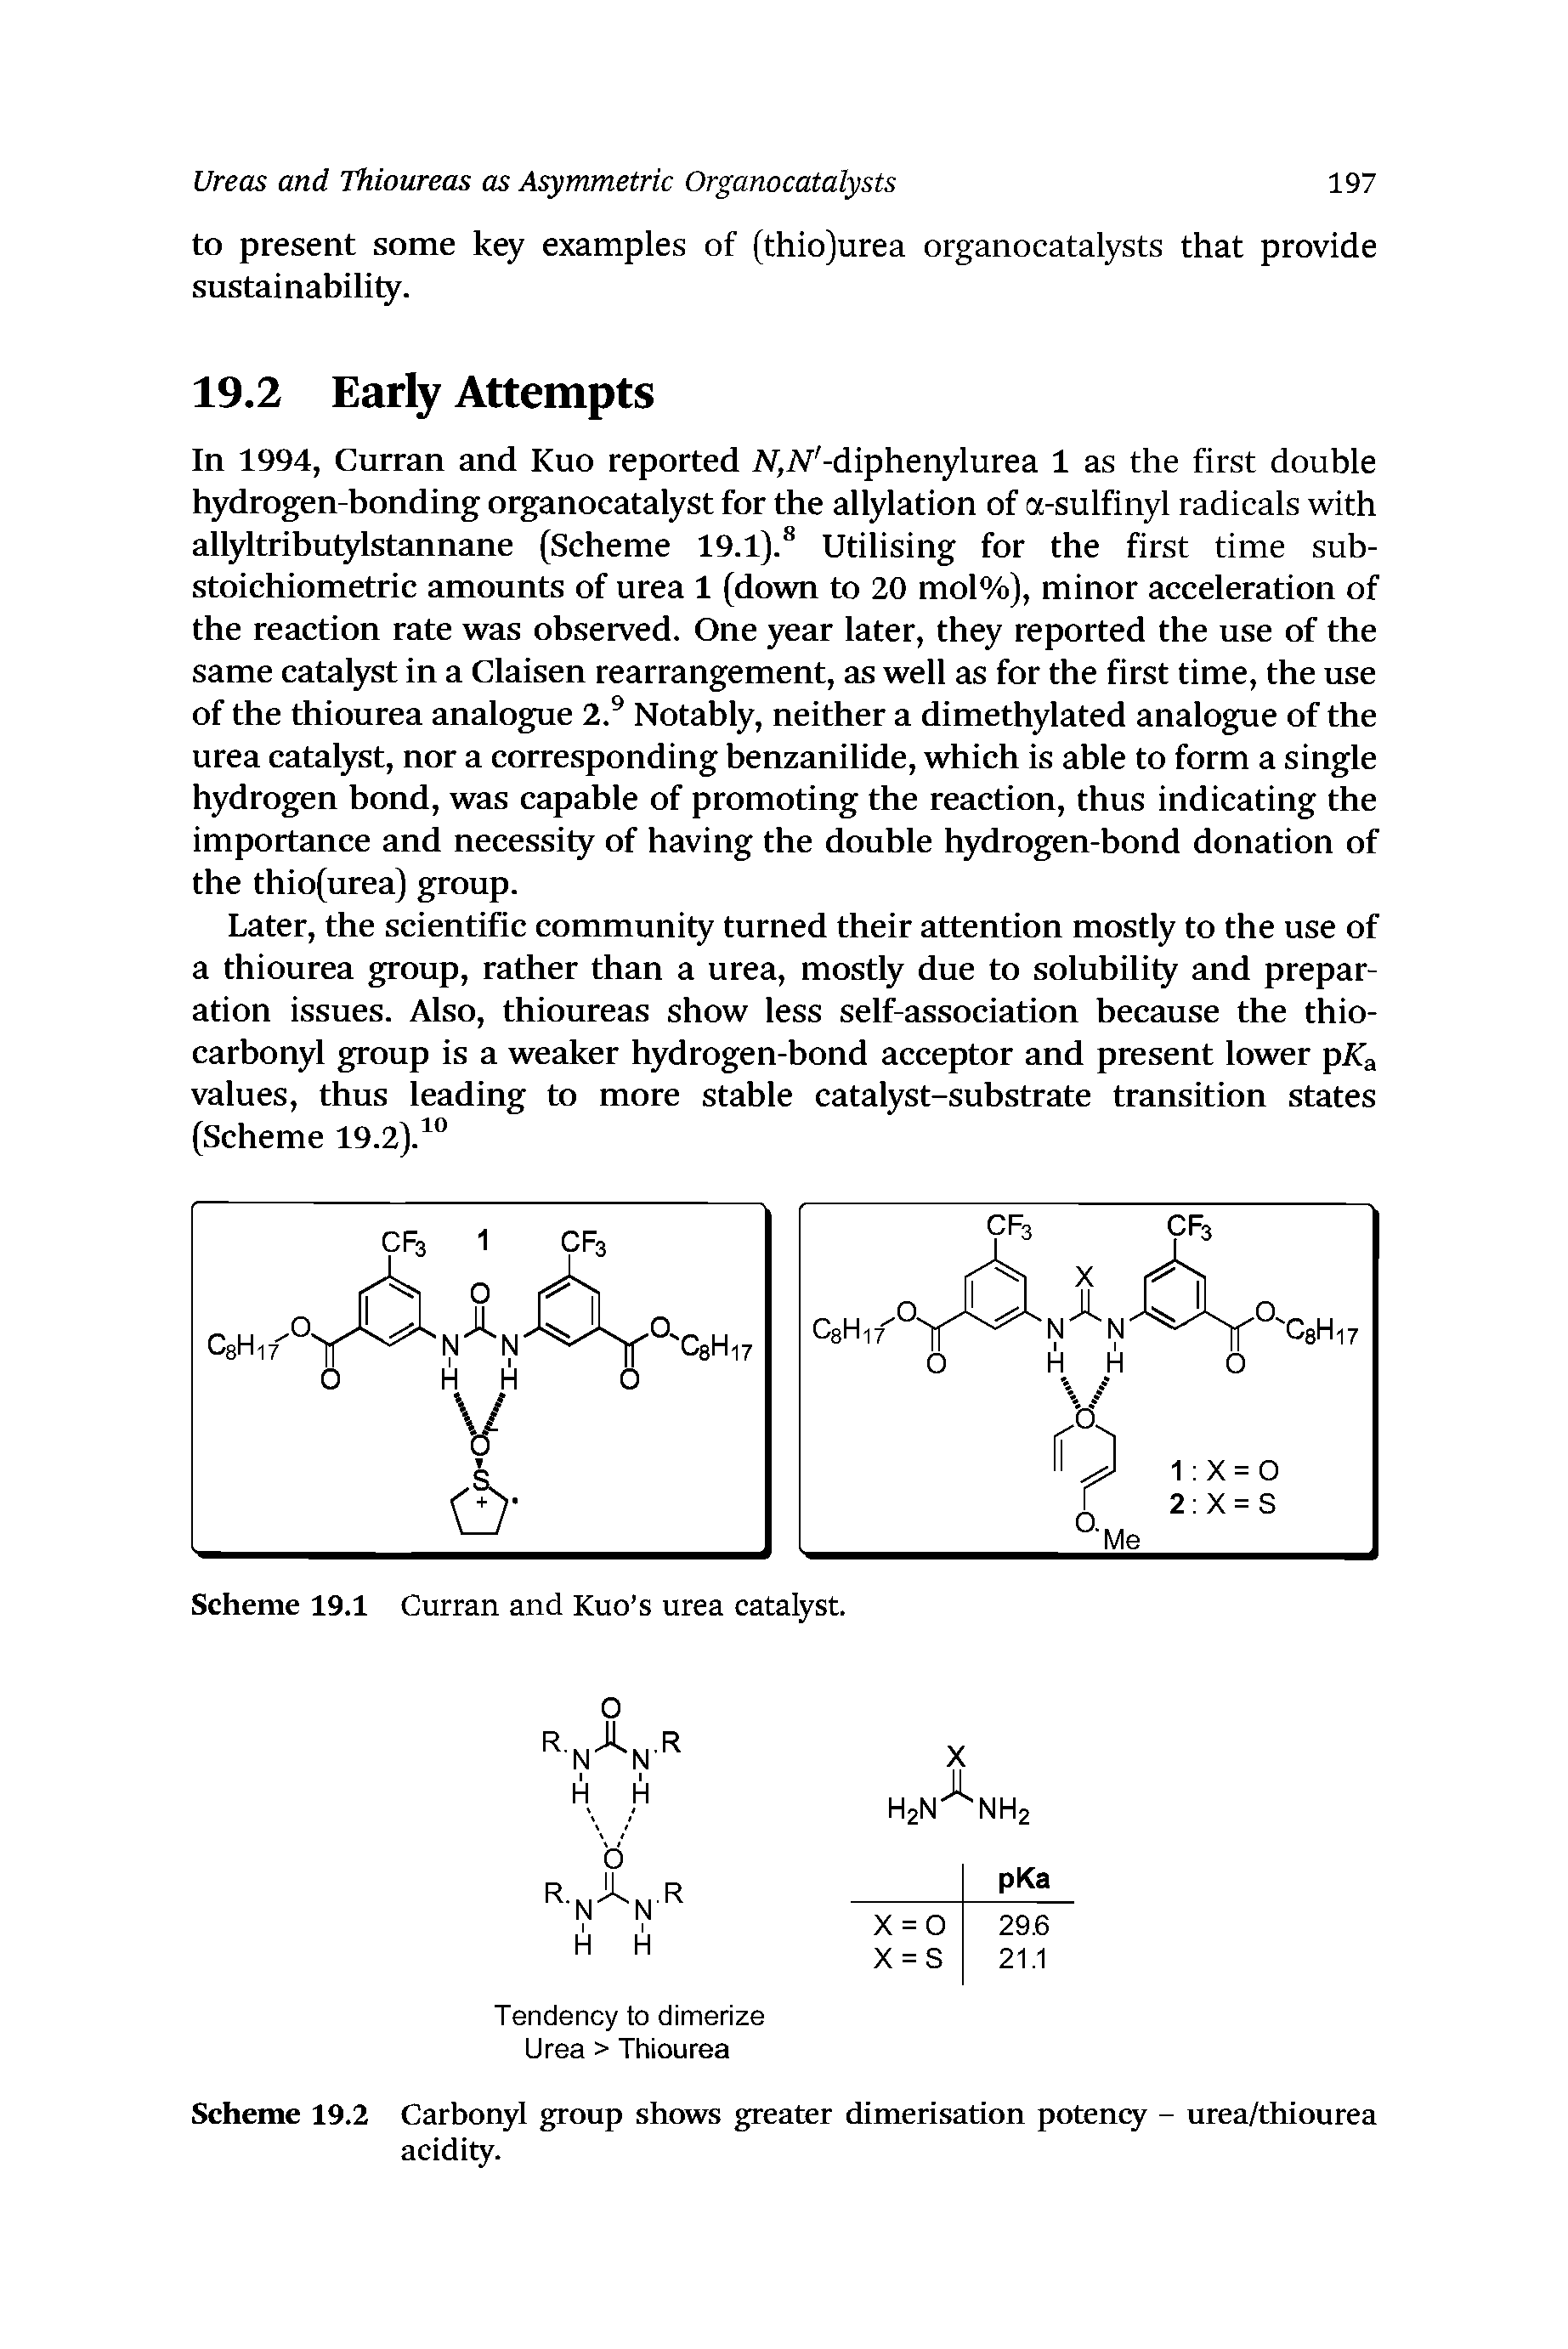 Scheme 19.2 Carbonyl group shows greater dimerisation potency - urea/thiourea acidity.